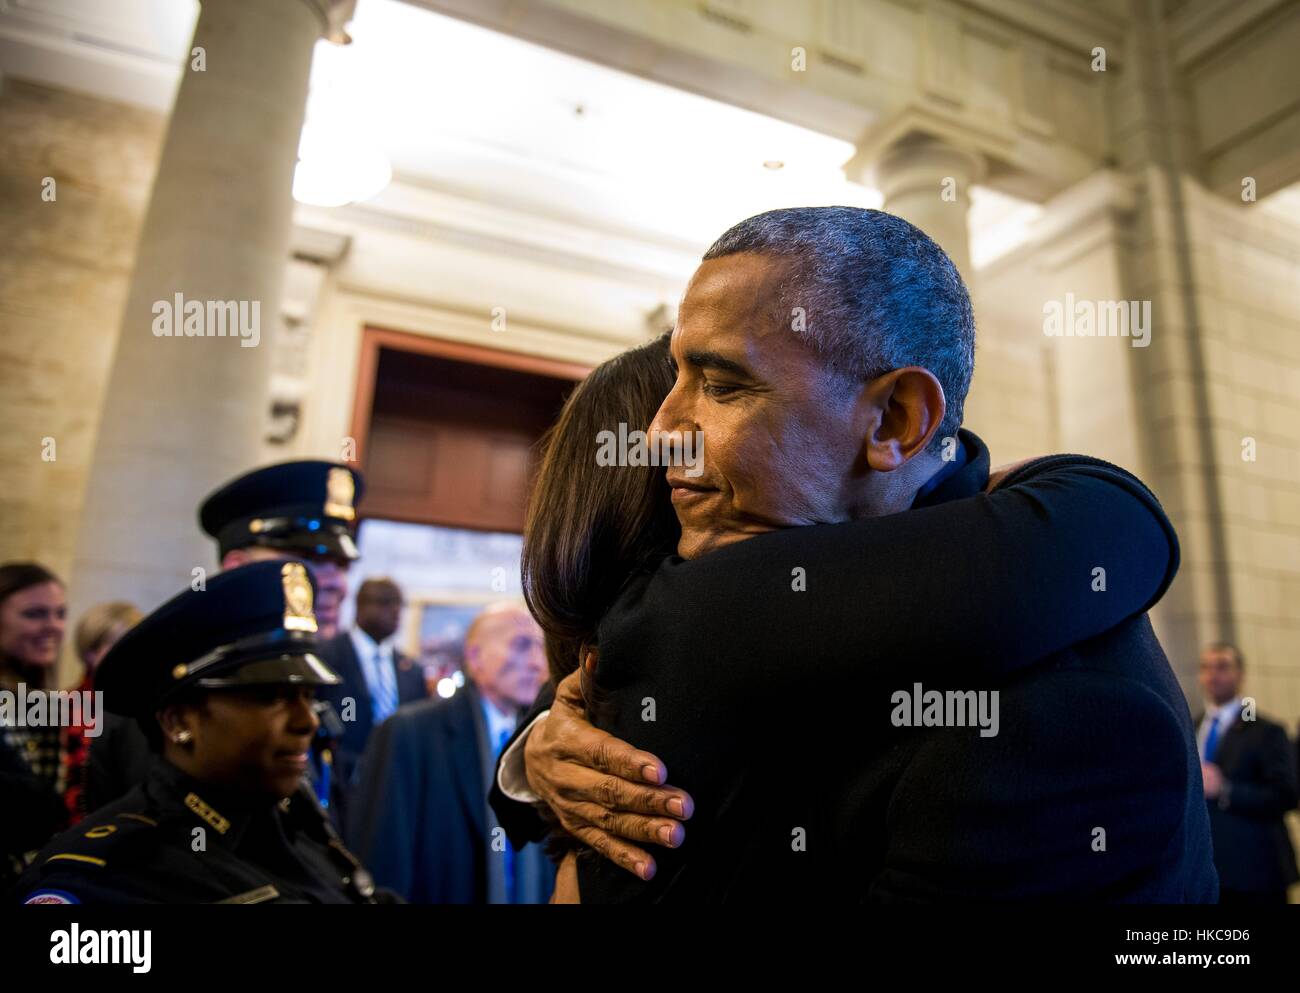 Ehemaliger US-Präsident Barack Obama umarmt seinen Präsidenten Mitarbeiter vor der Abreise Zeremonie während der 58. Presidential Inauguration 20. Januar 2017 in Washington, DC. Stockfoto